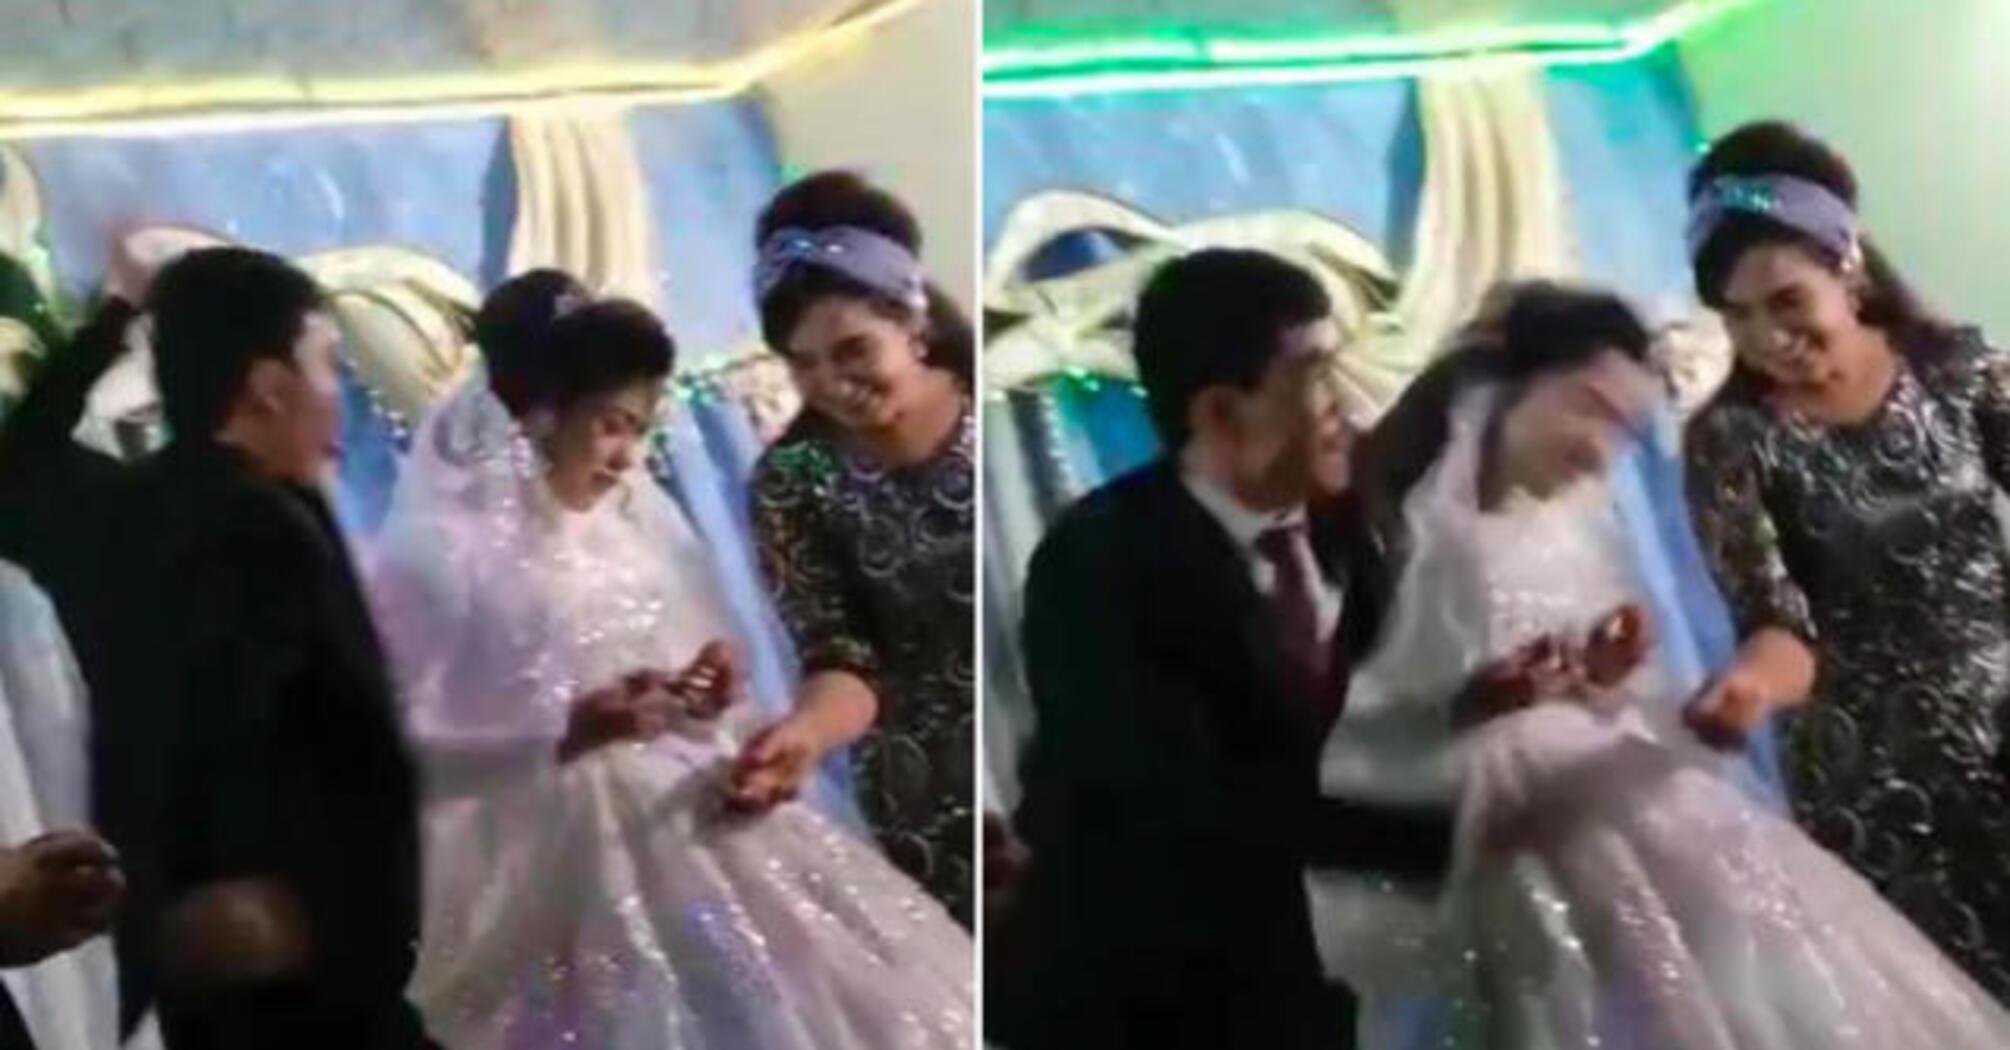 Man beats bride and guests at wedding